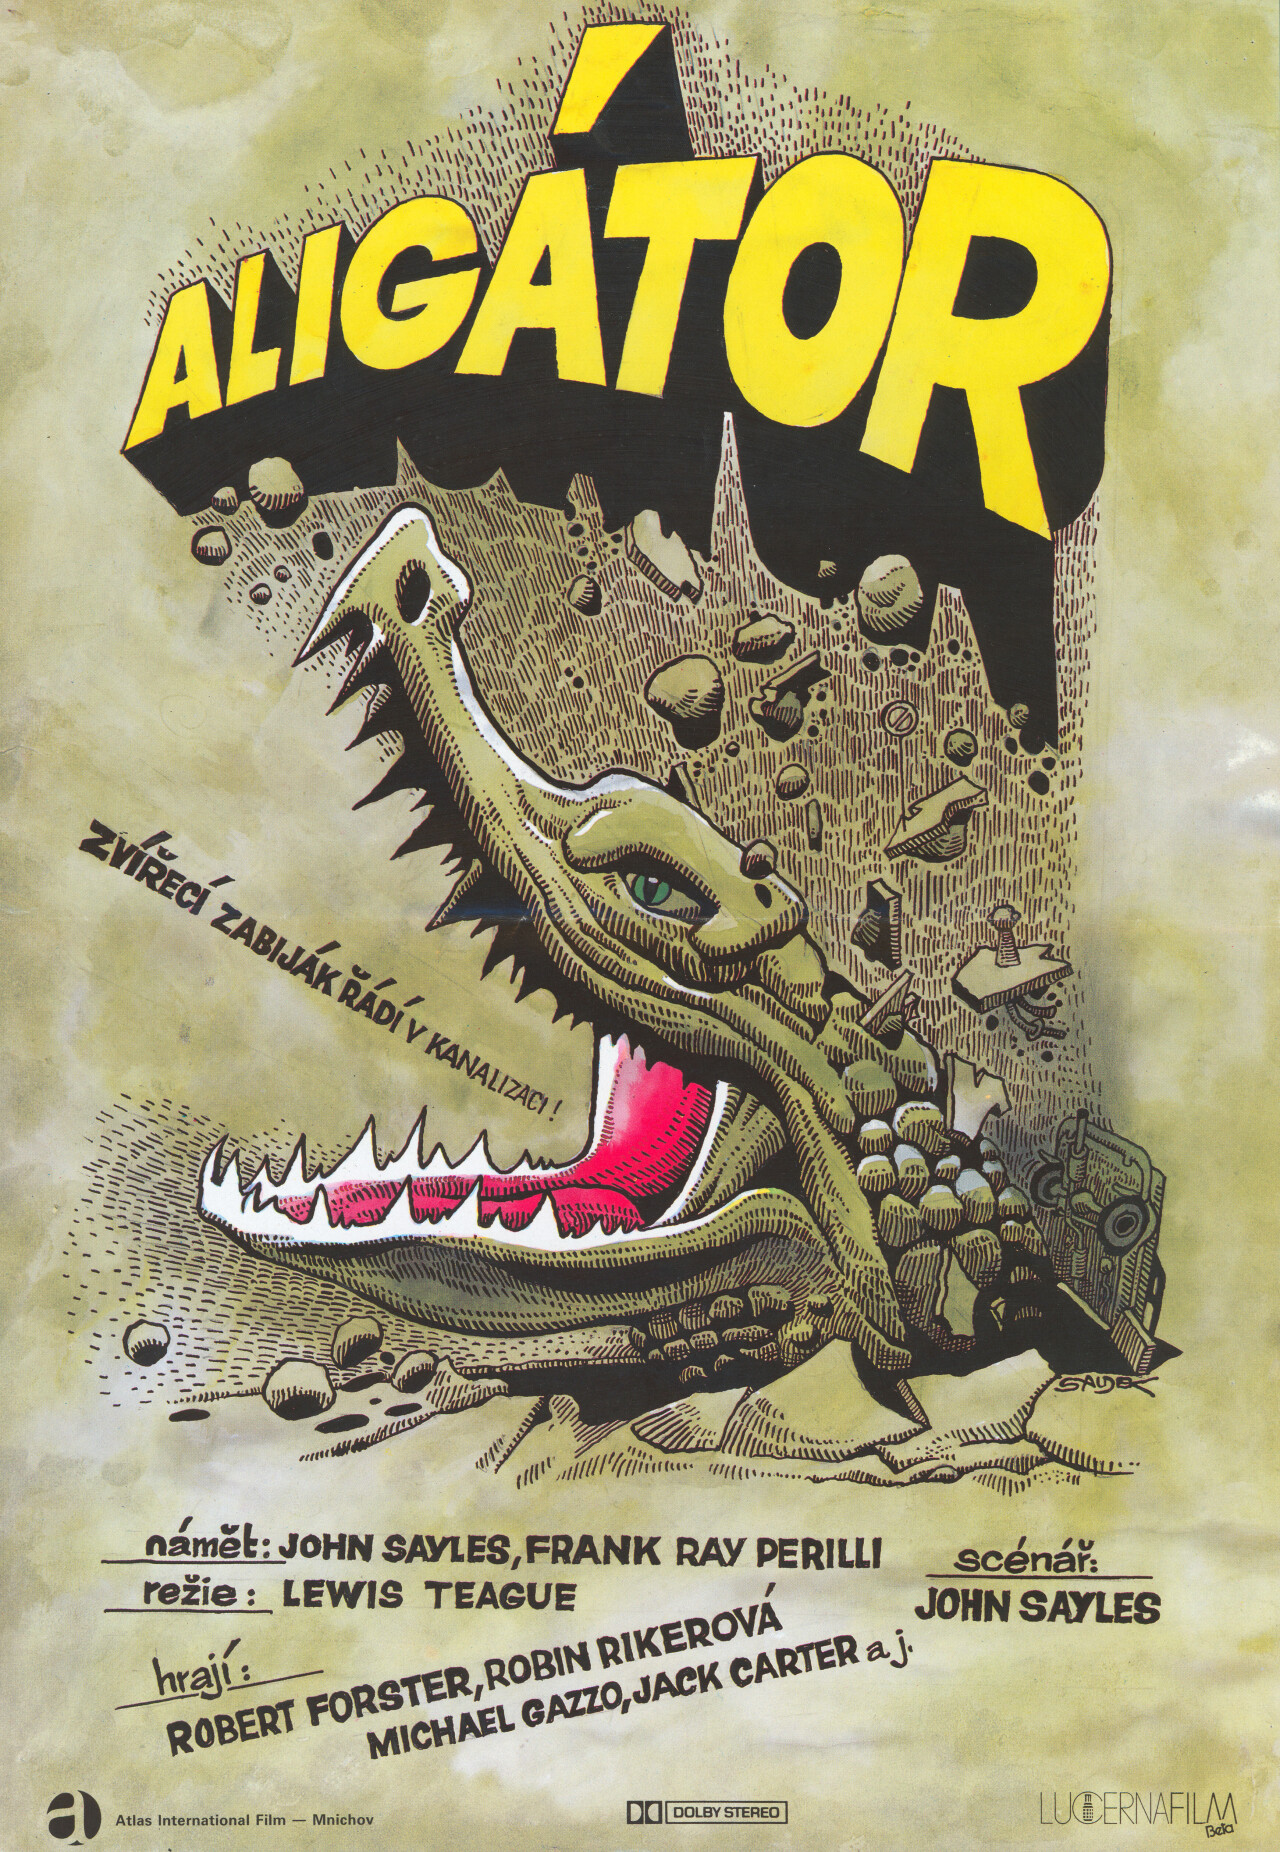 Аллигатор (Alligator, 1980), режиссёр Льюис Тиг, чехословацкий постер к фильму, автор Карел Саудек (ужасы, 1980 год)